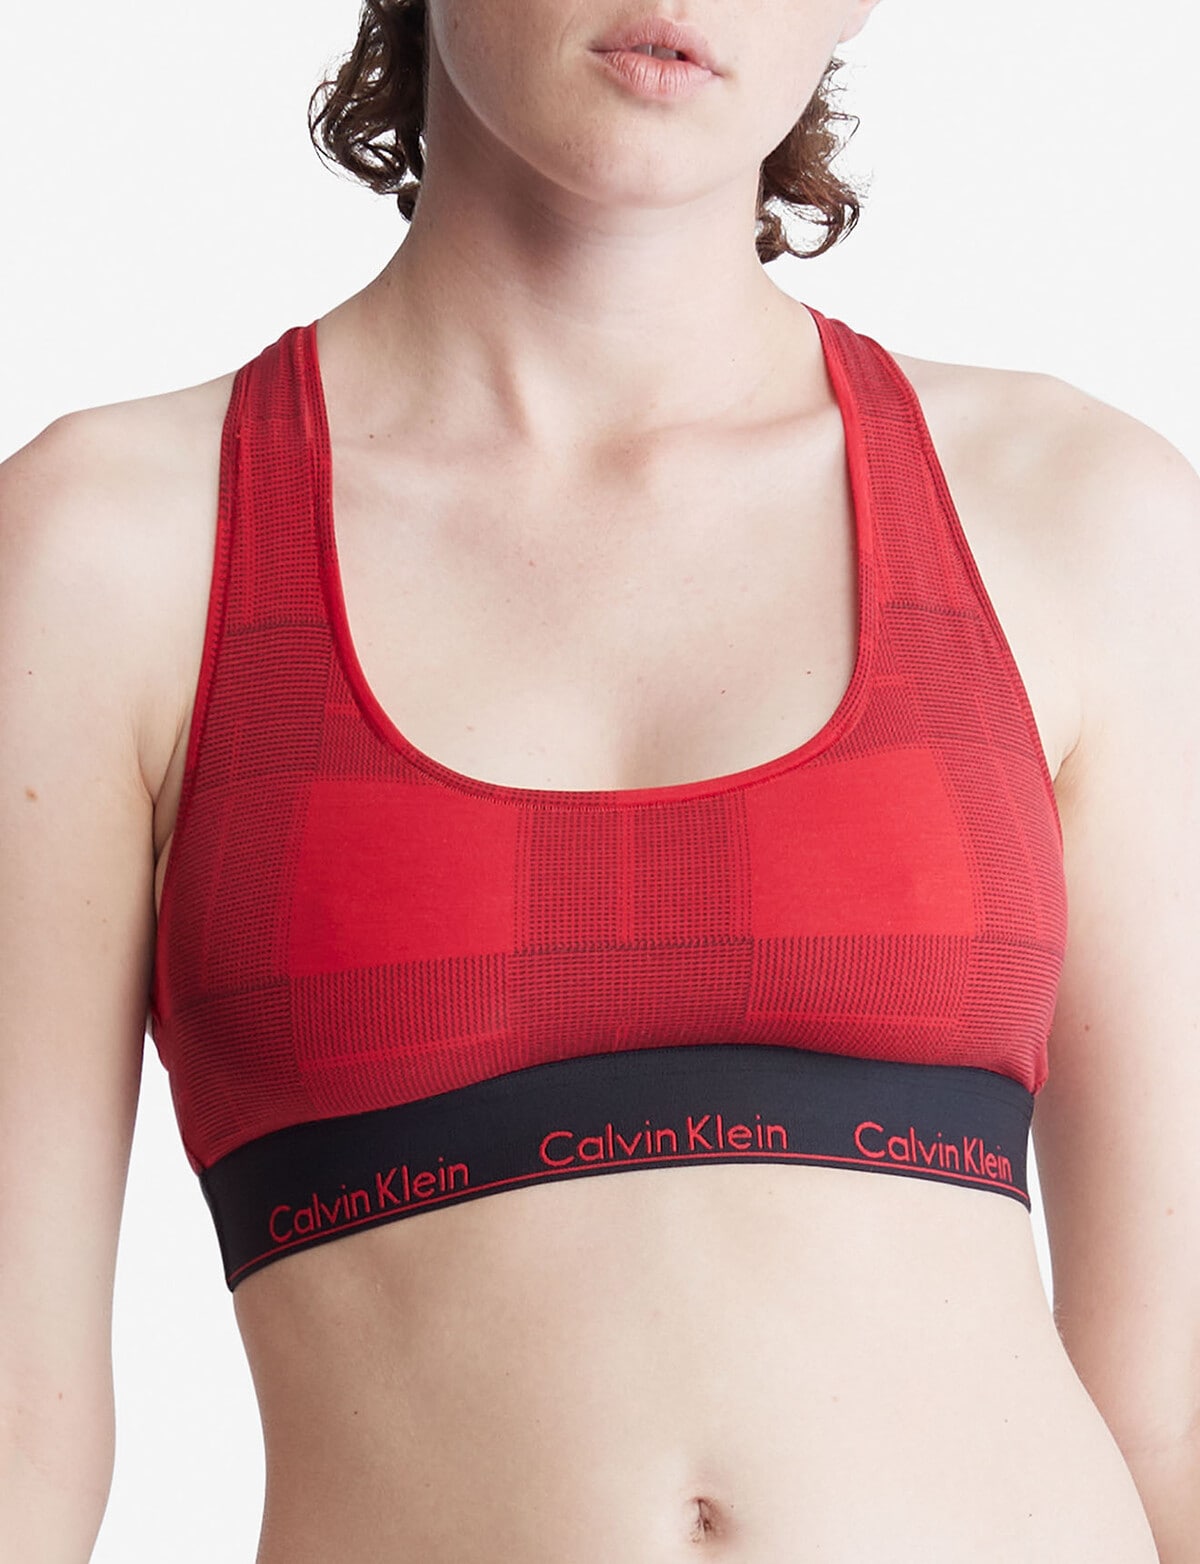 Calvin Klein Modern Cotton Plaid Bralette, Red - Bras